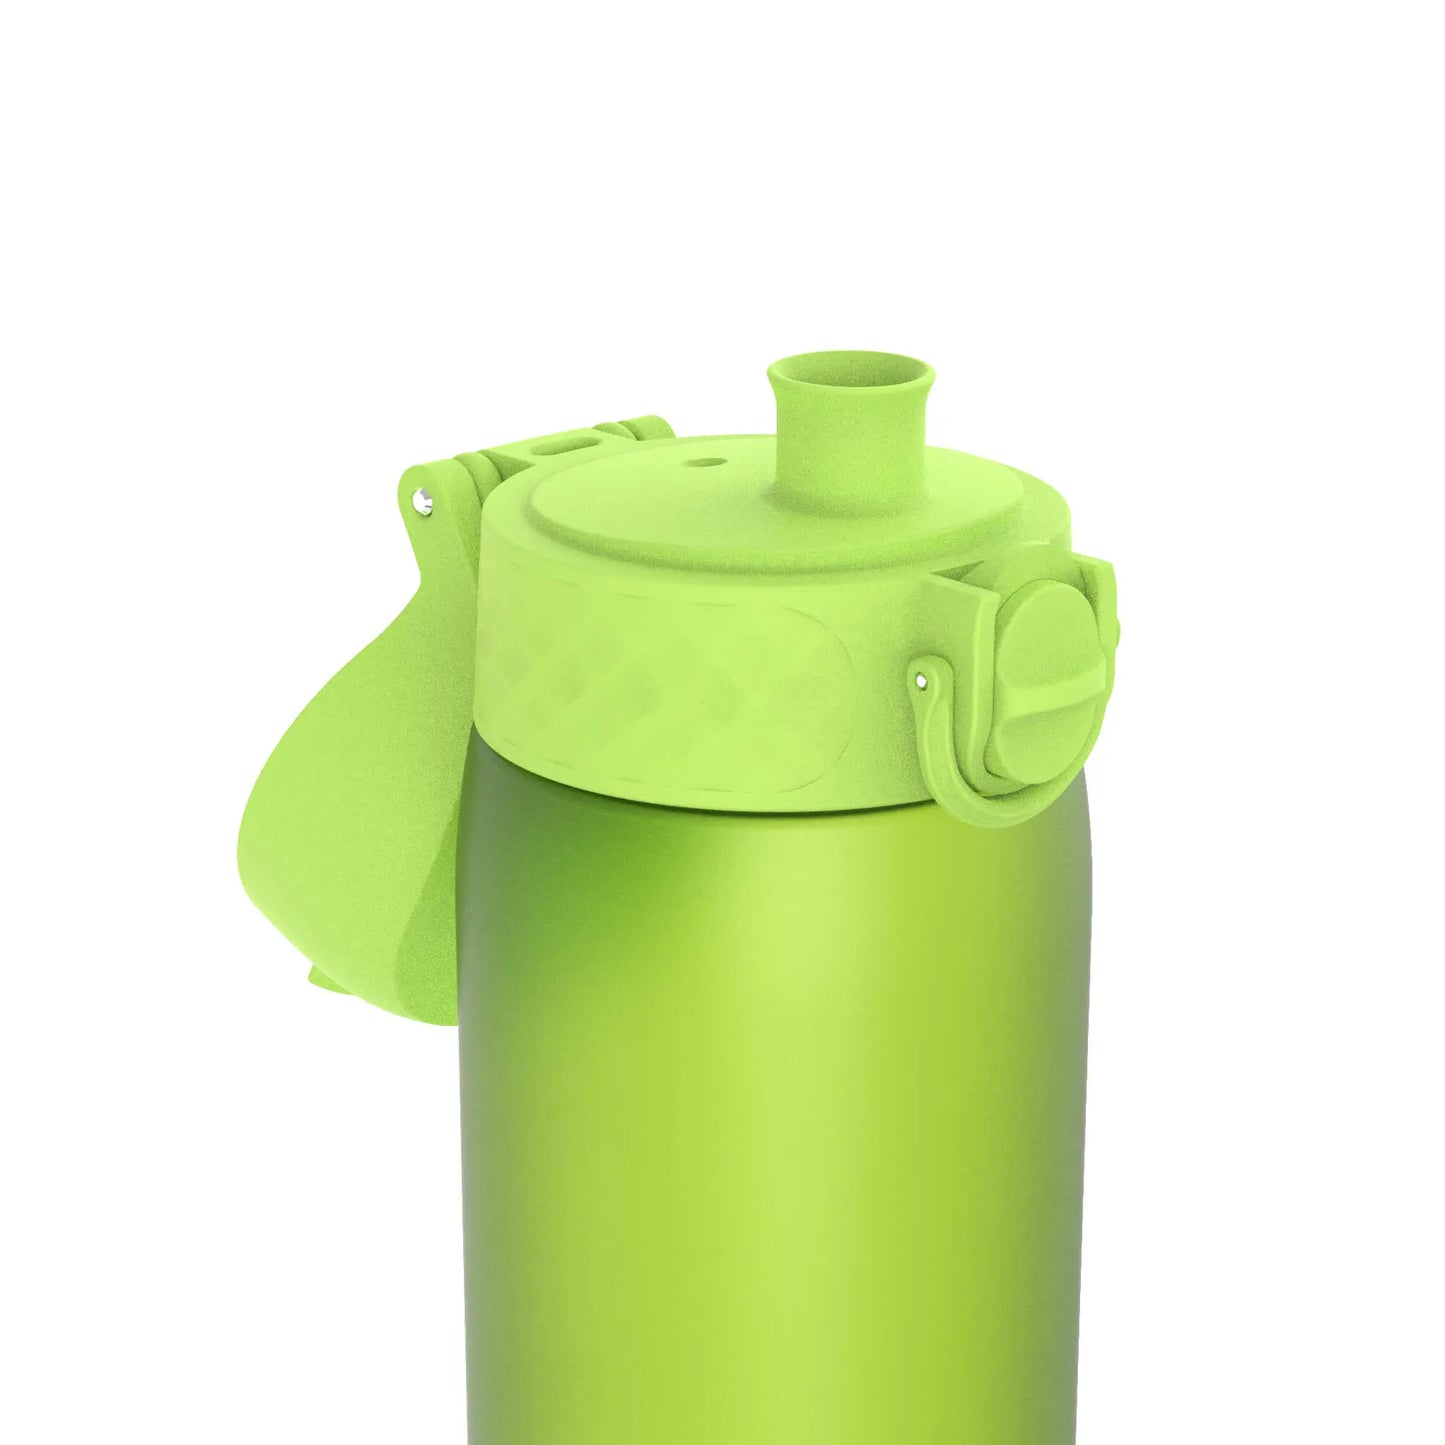 Leak Proof Slim Water Bottle, Recyclon™, Green, 500ml (18oz) Ion8